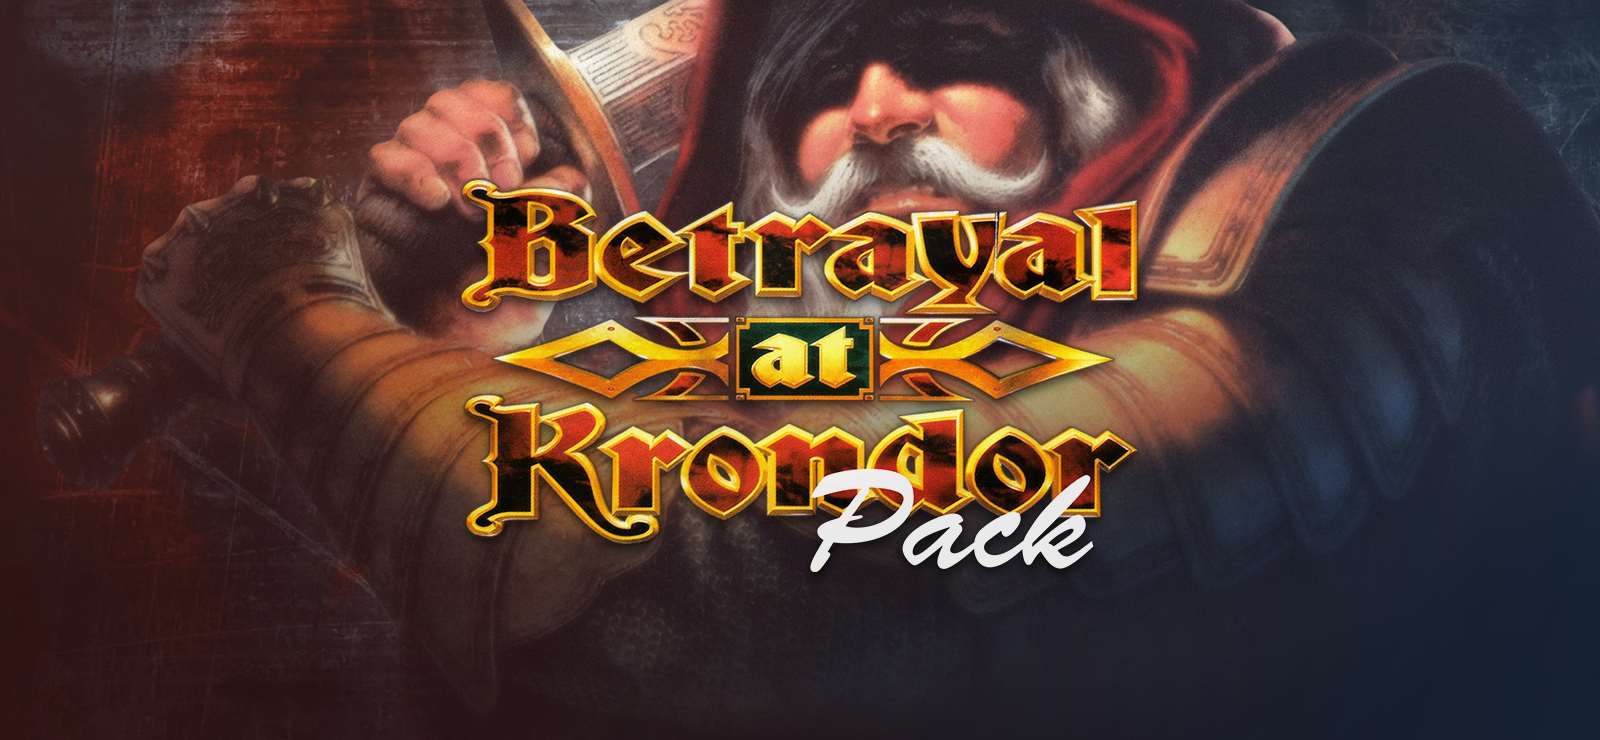 Betrayal At Krondor Pack